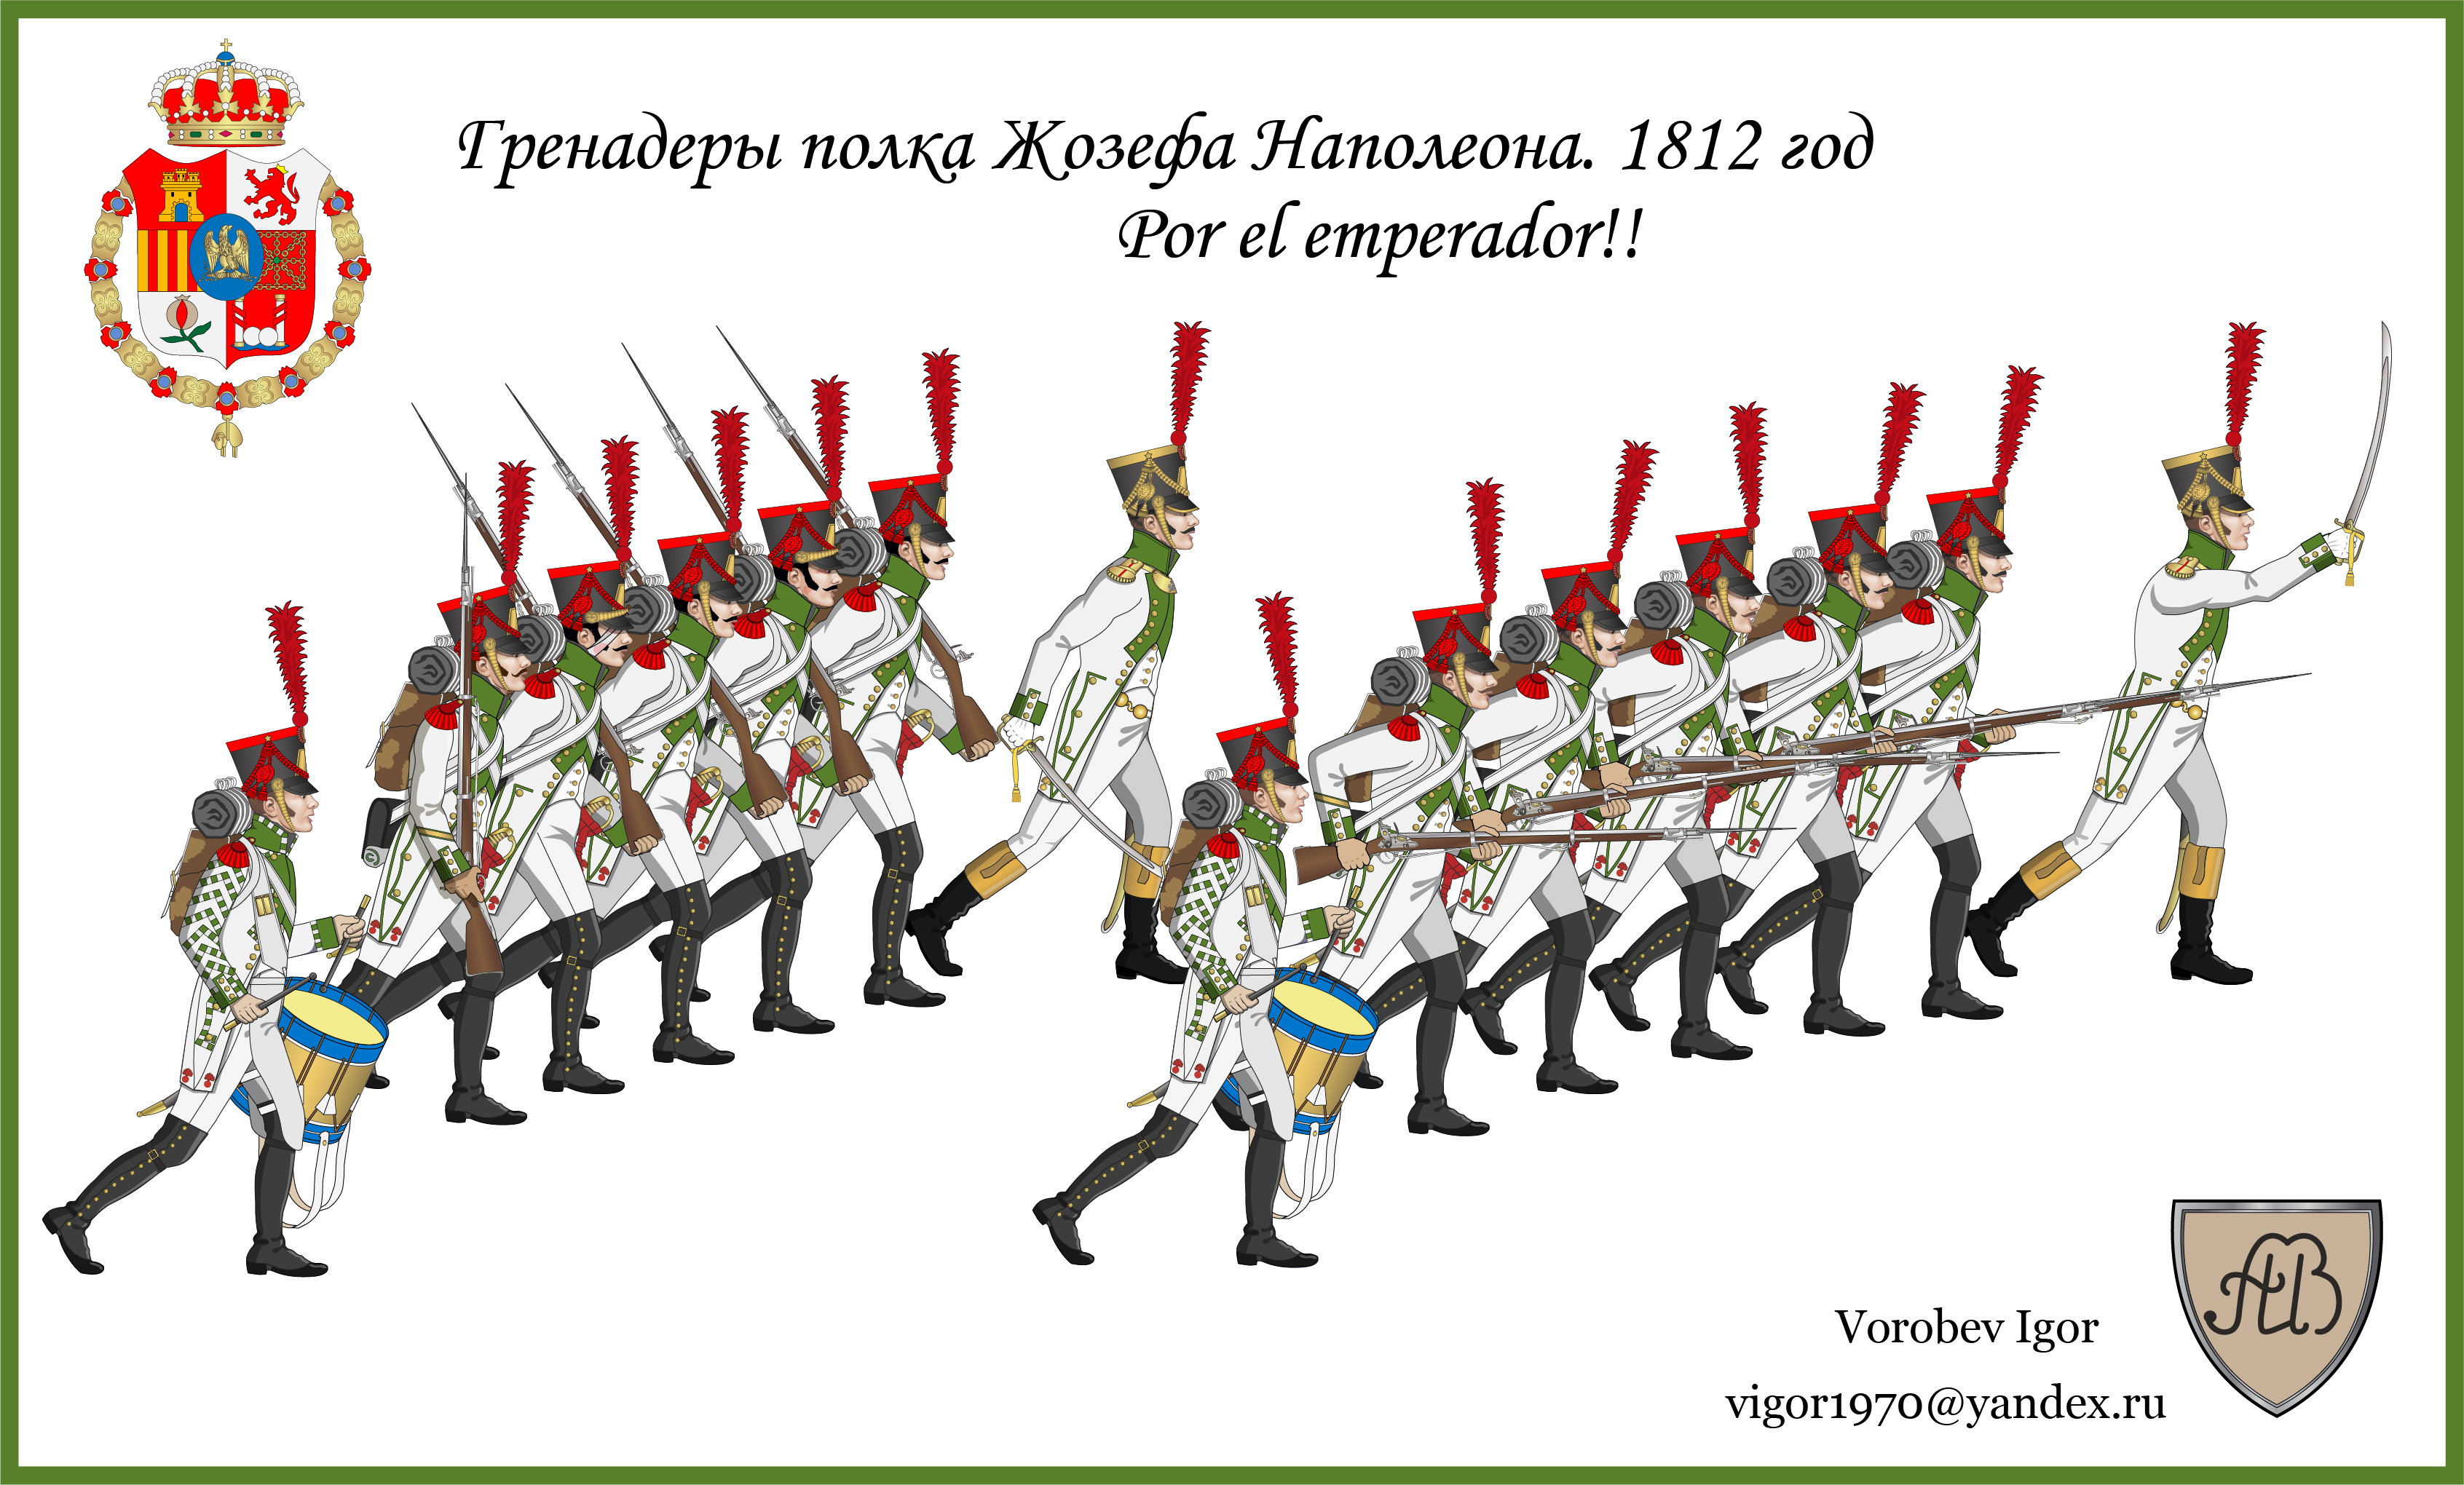 Рекламма гренадер Жозефа Наполеона